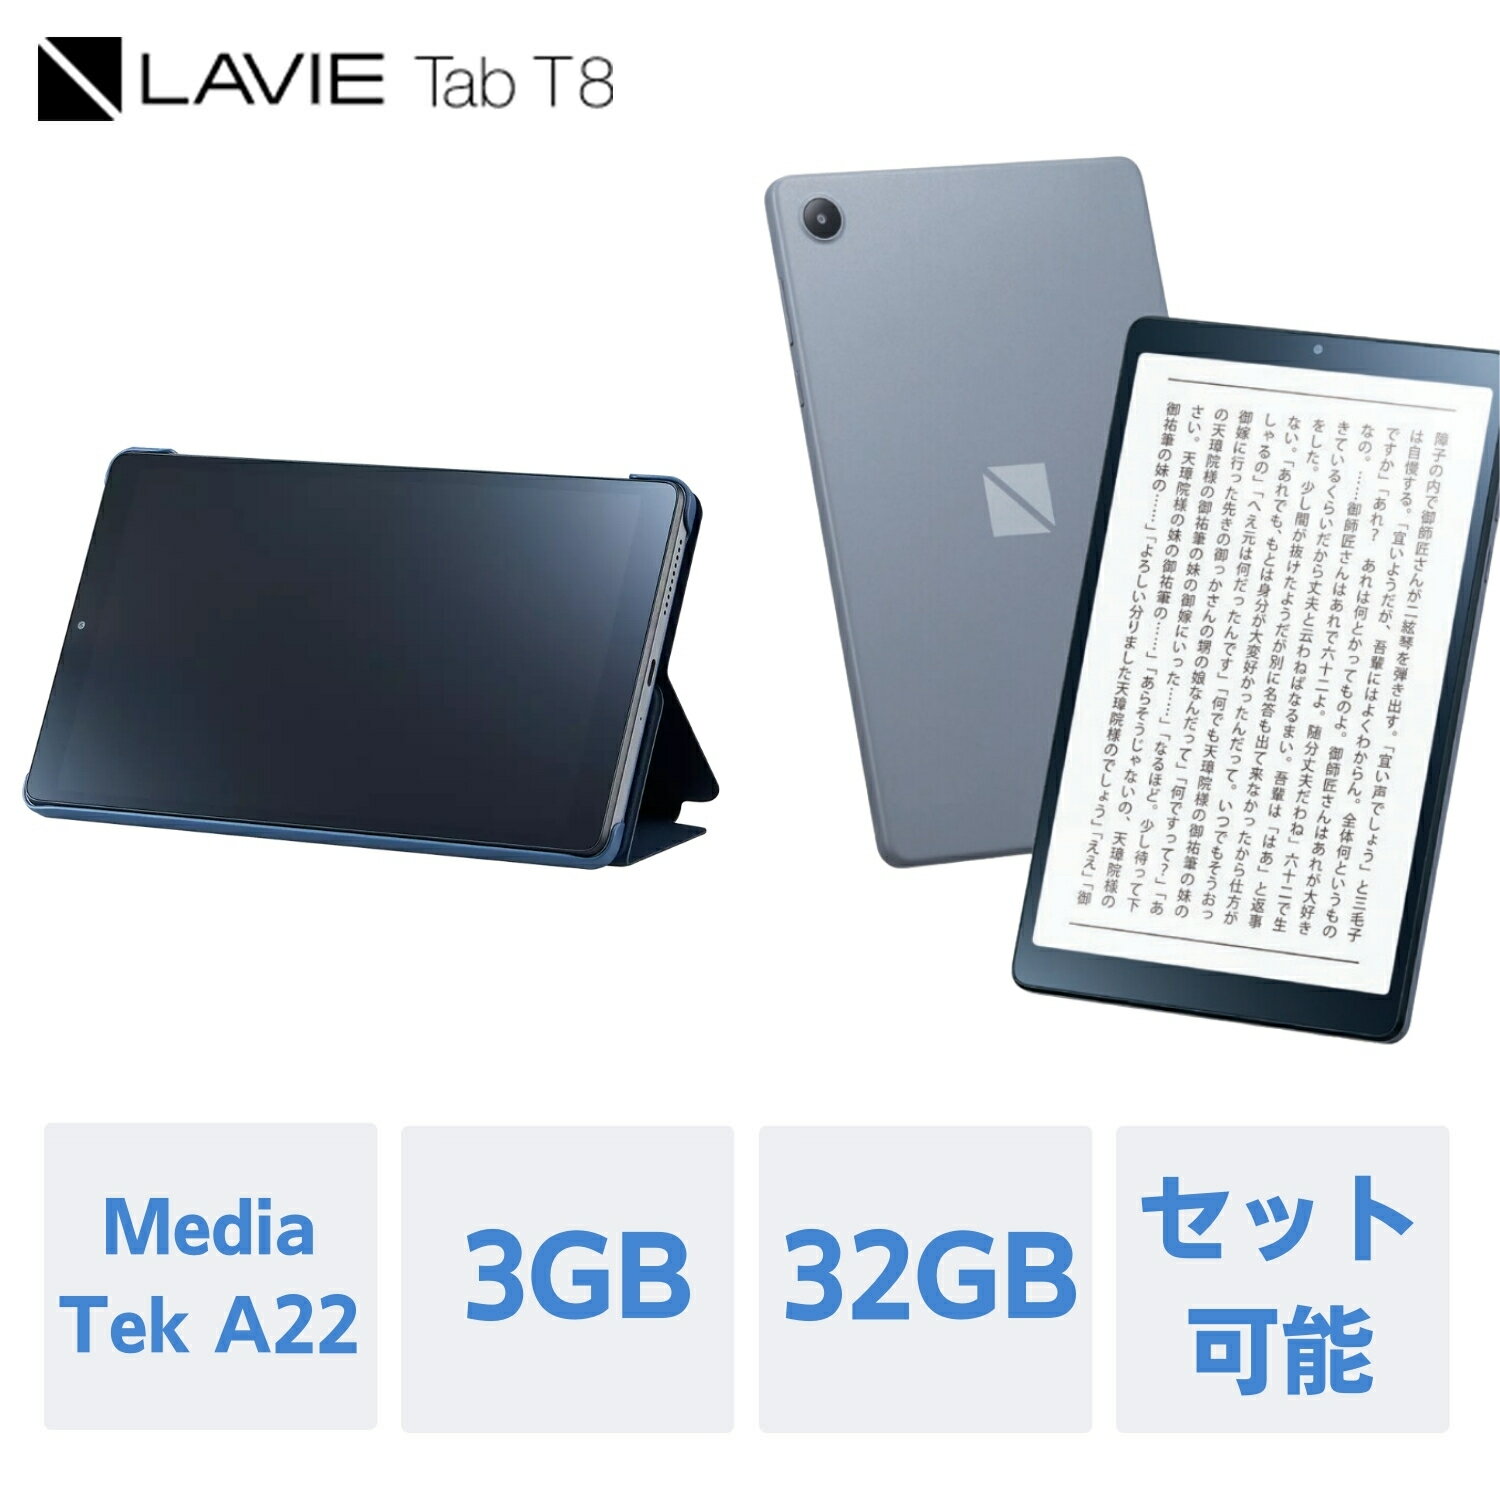 【最大P27 還元 】【公式】 NEC LAVIE 日本 メーカー タブレット Android 12 wi-fiモデル MediaTek A22 8インチ 3GB 32GB PC-TAB08H04 カバーセット